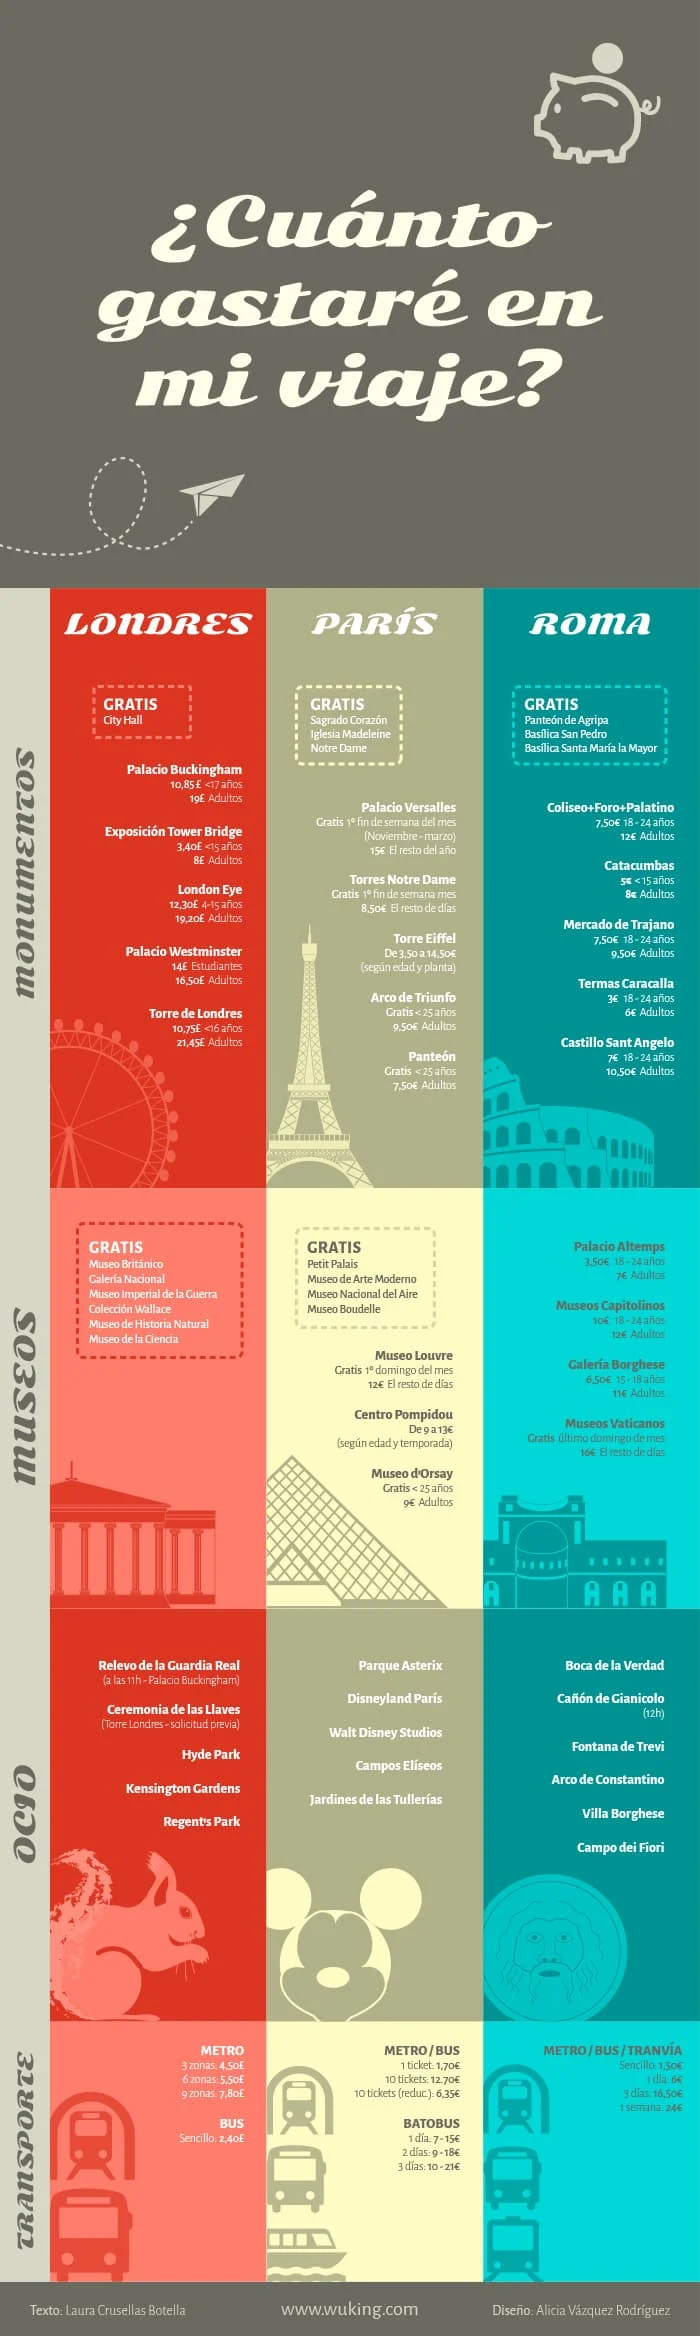 Ejemplo de infografía comparativa con datos de viaje para Londres, París y Roma